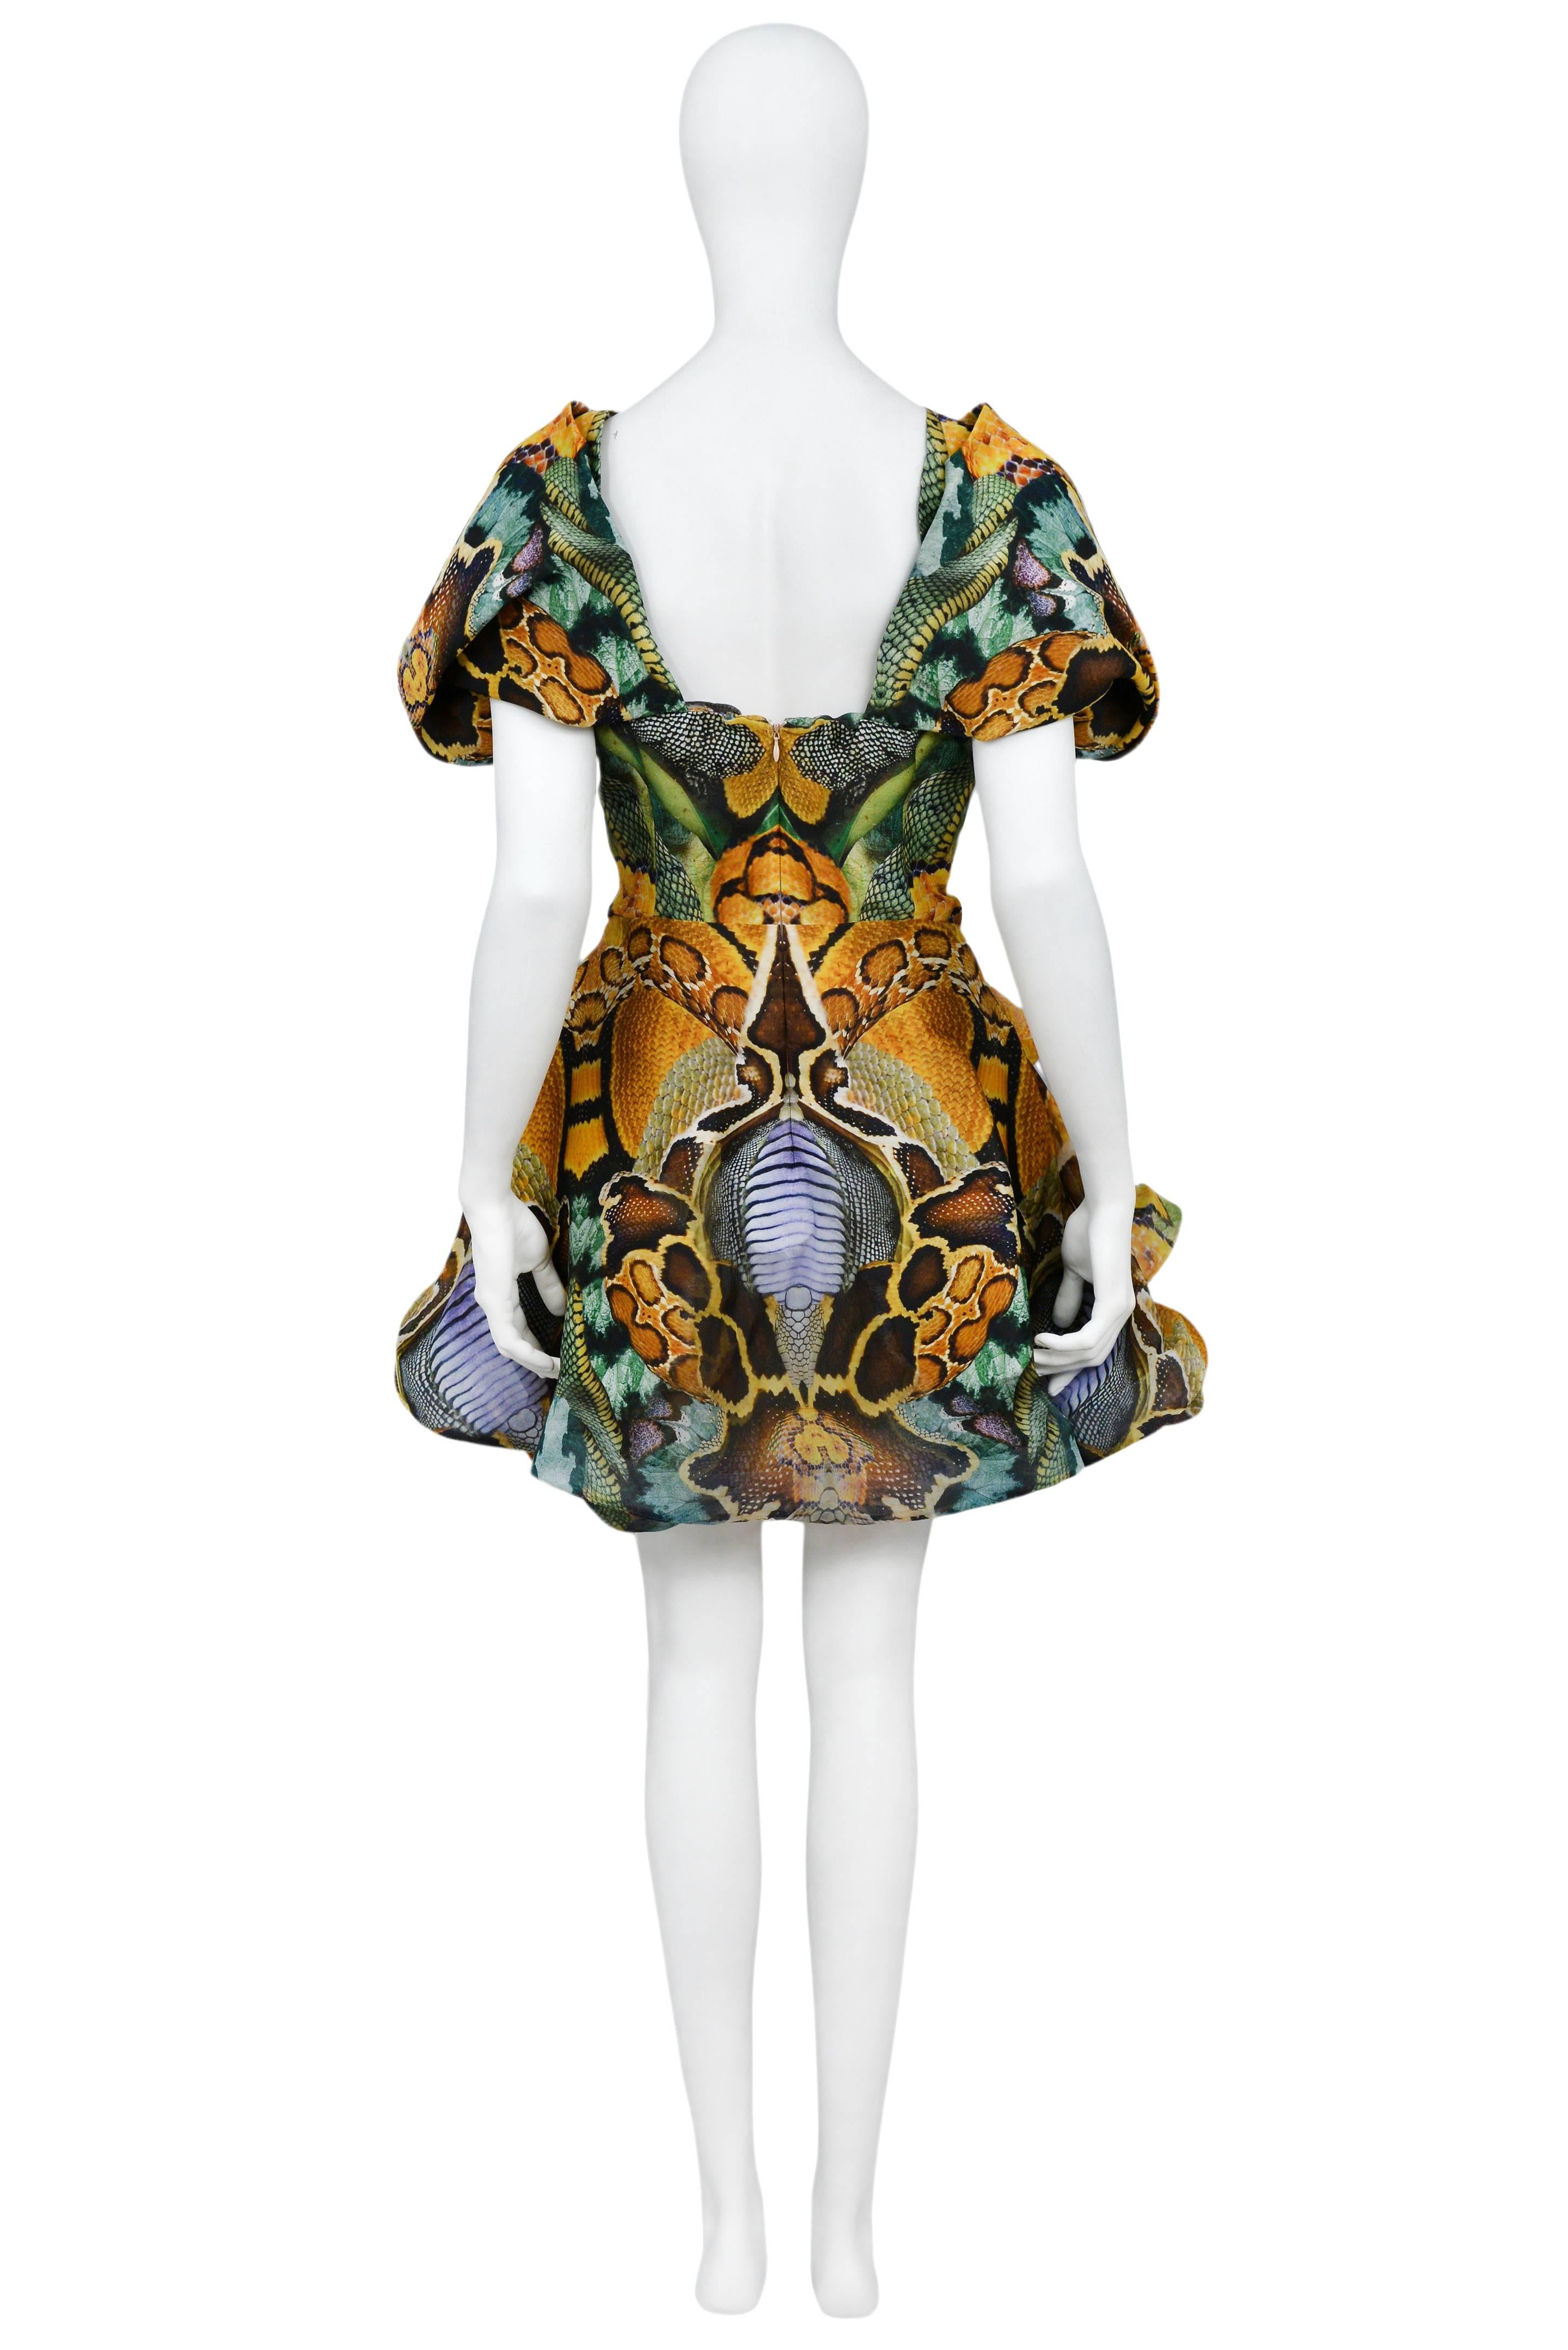 Alexander McQueen Platos Atlantis Dress 2010 In Excellent Condition In Los Angeles, CA